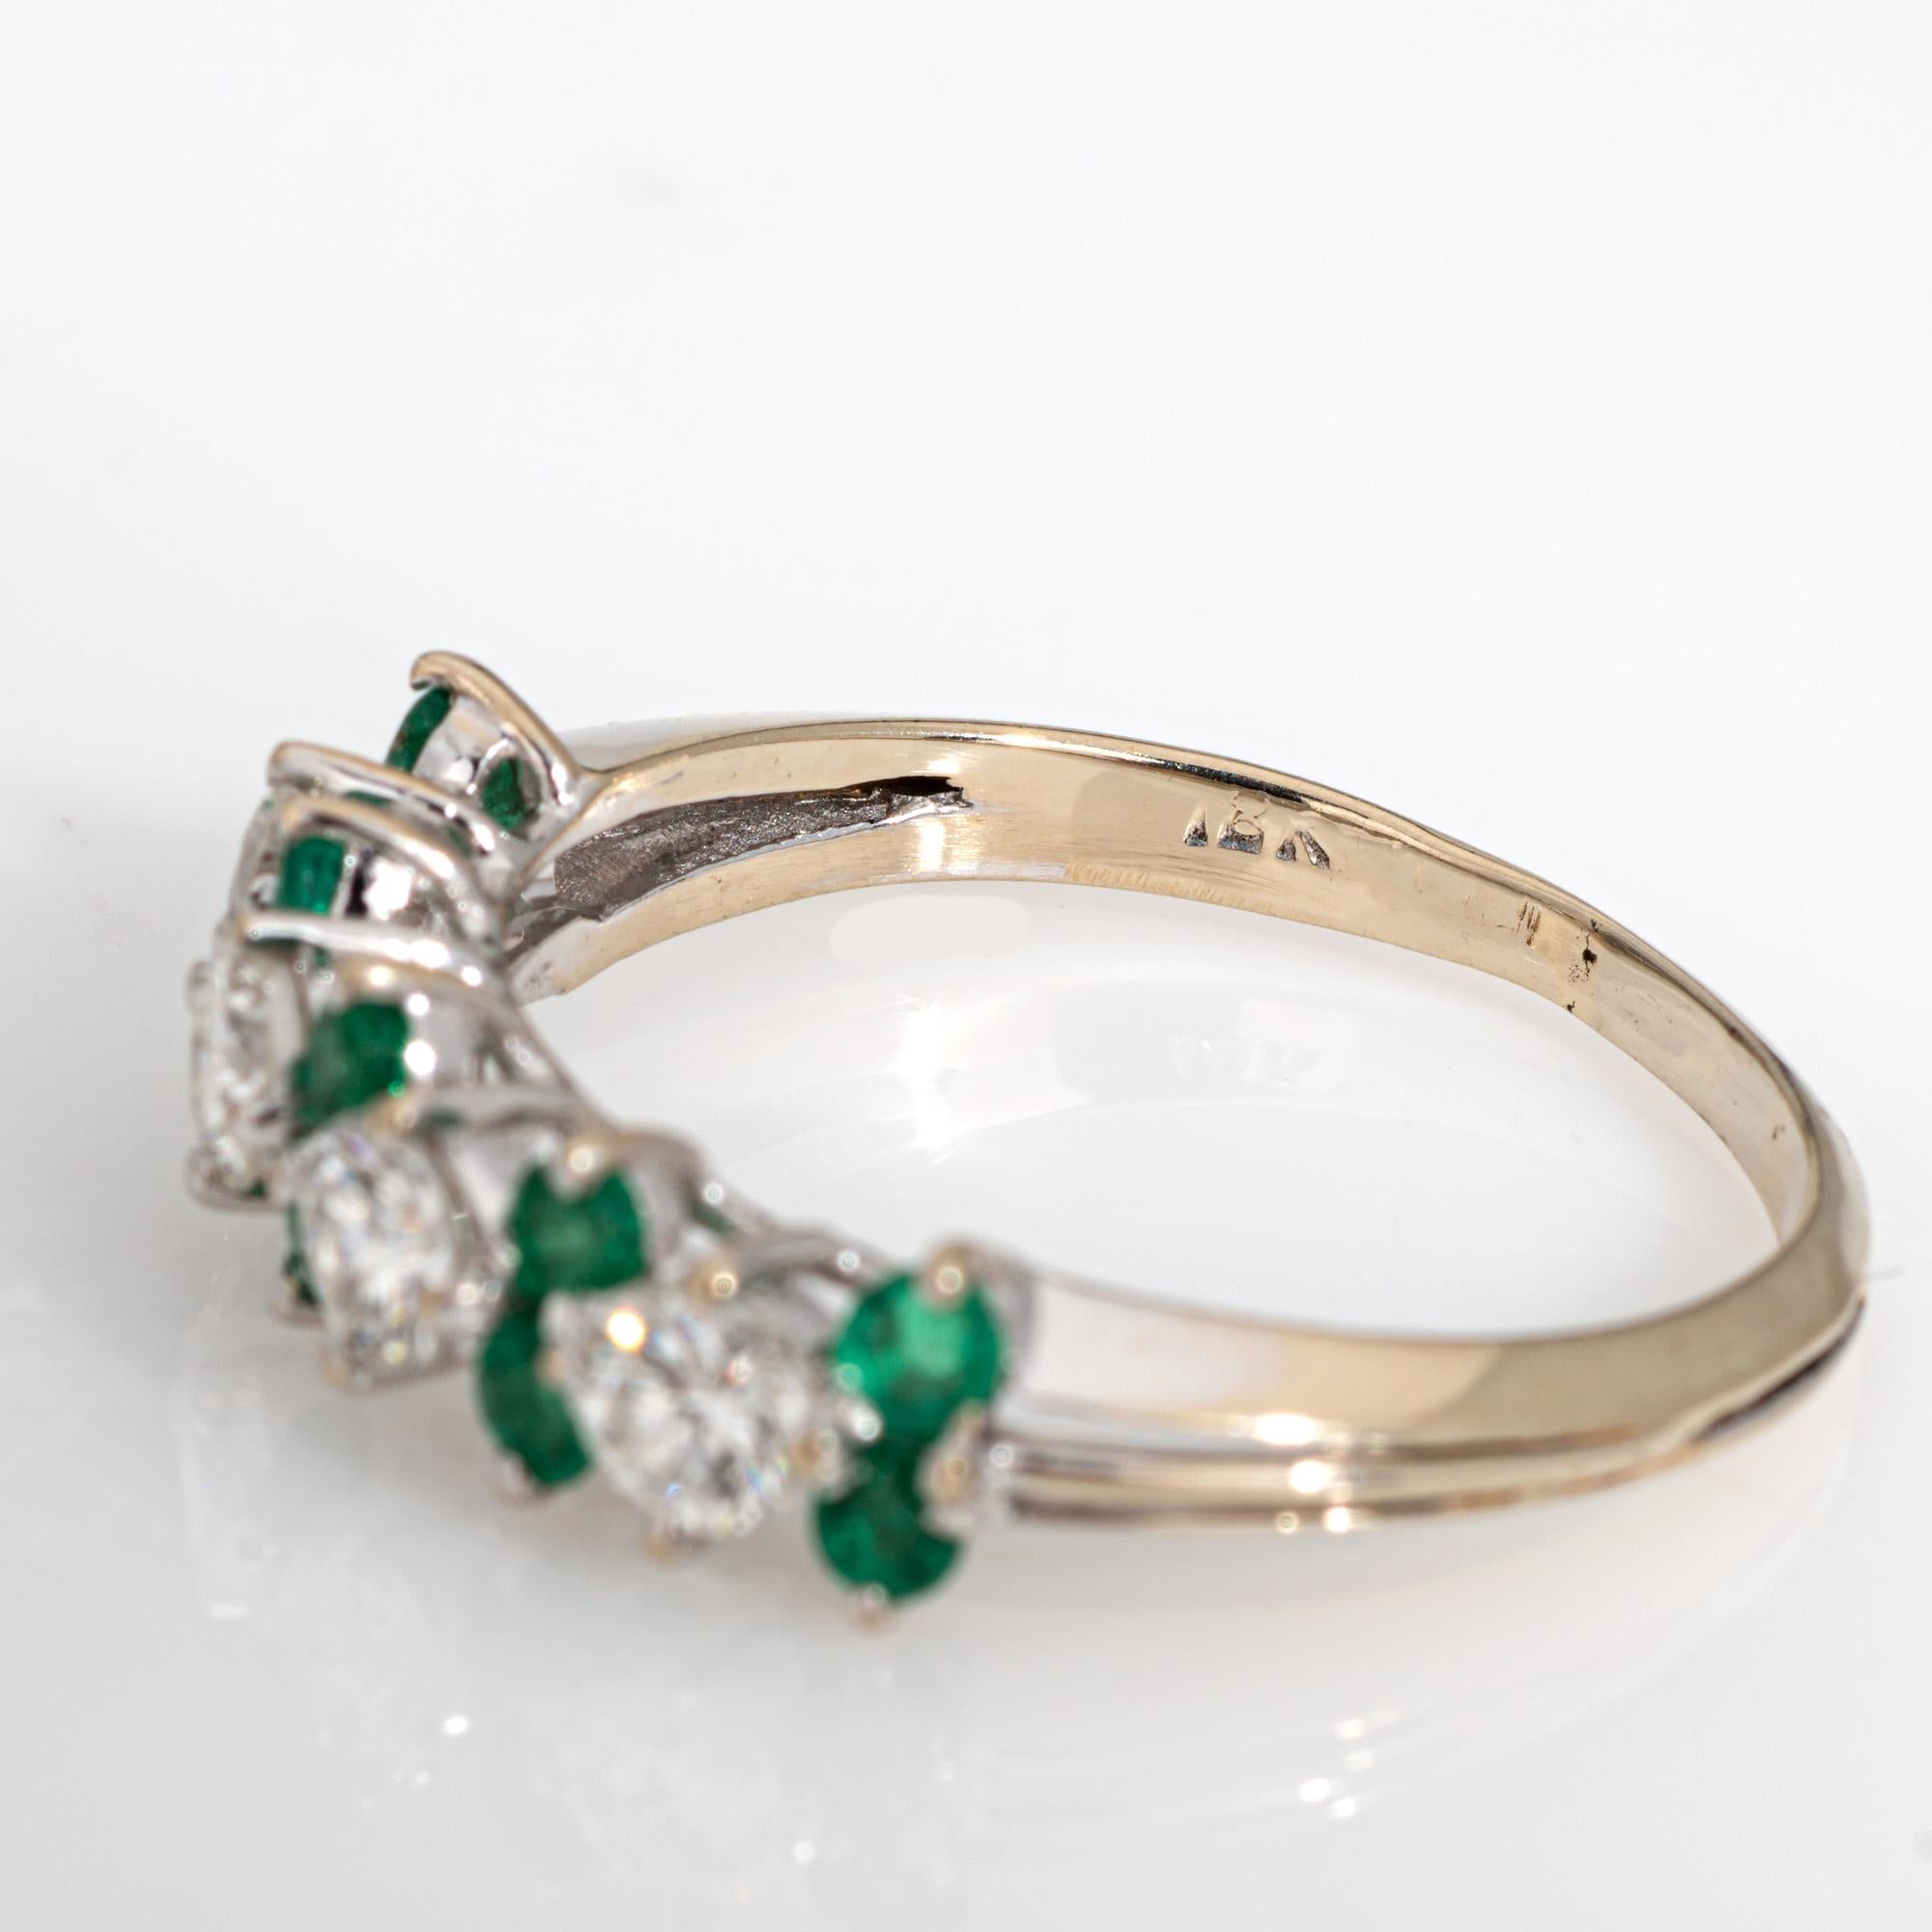 Diamond Emerald Ring Gemstone Band 18k White Gold Anniversary Fine Jewelry 1